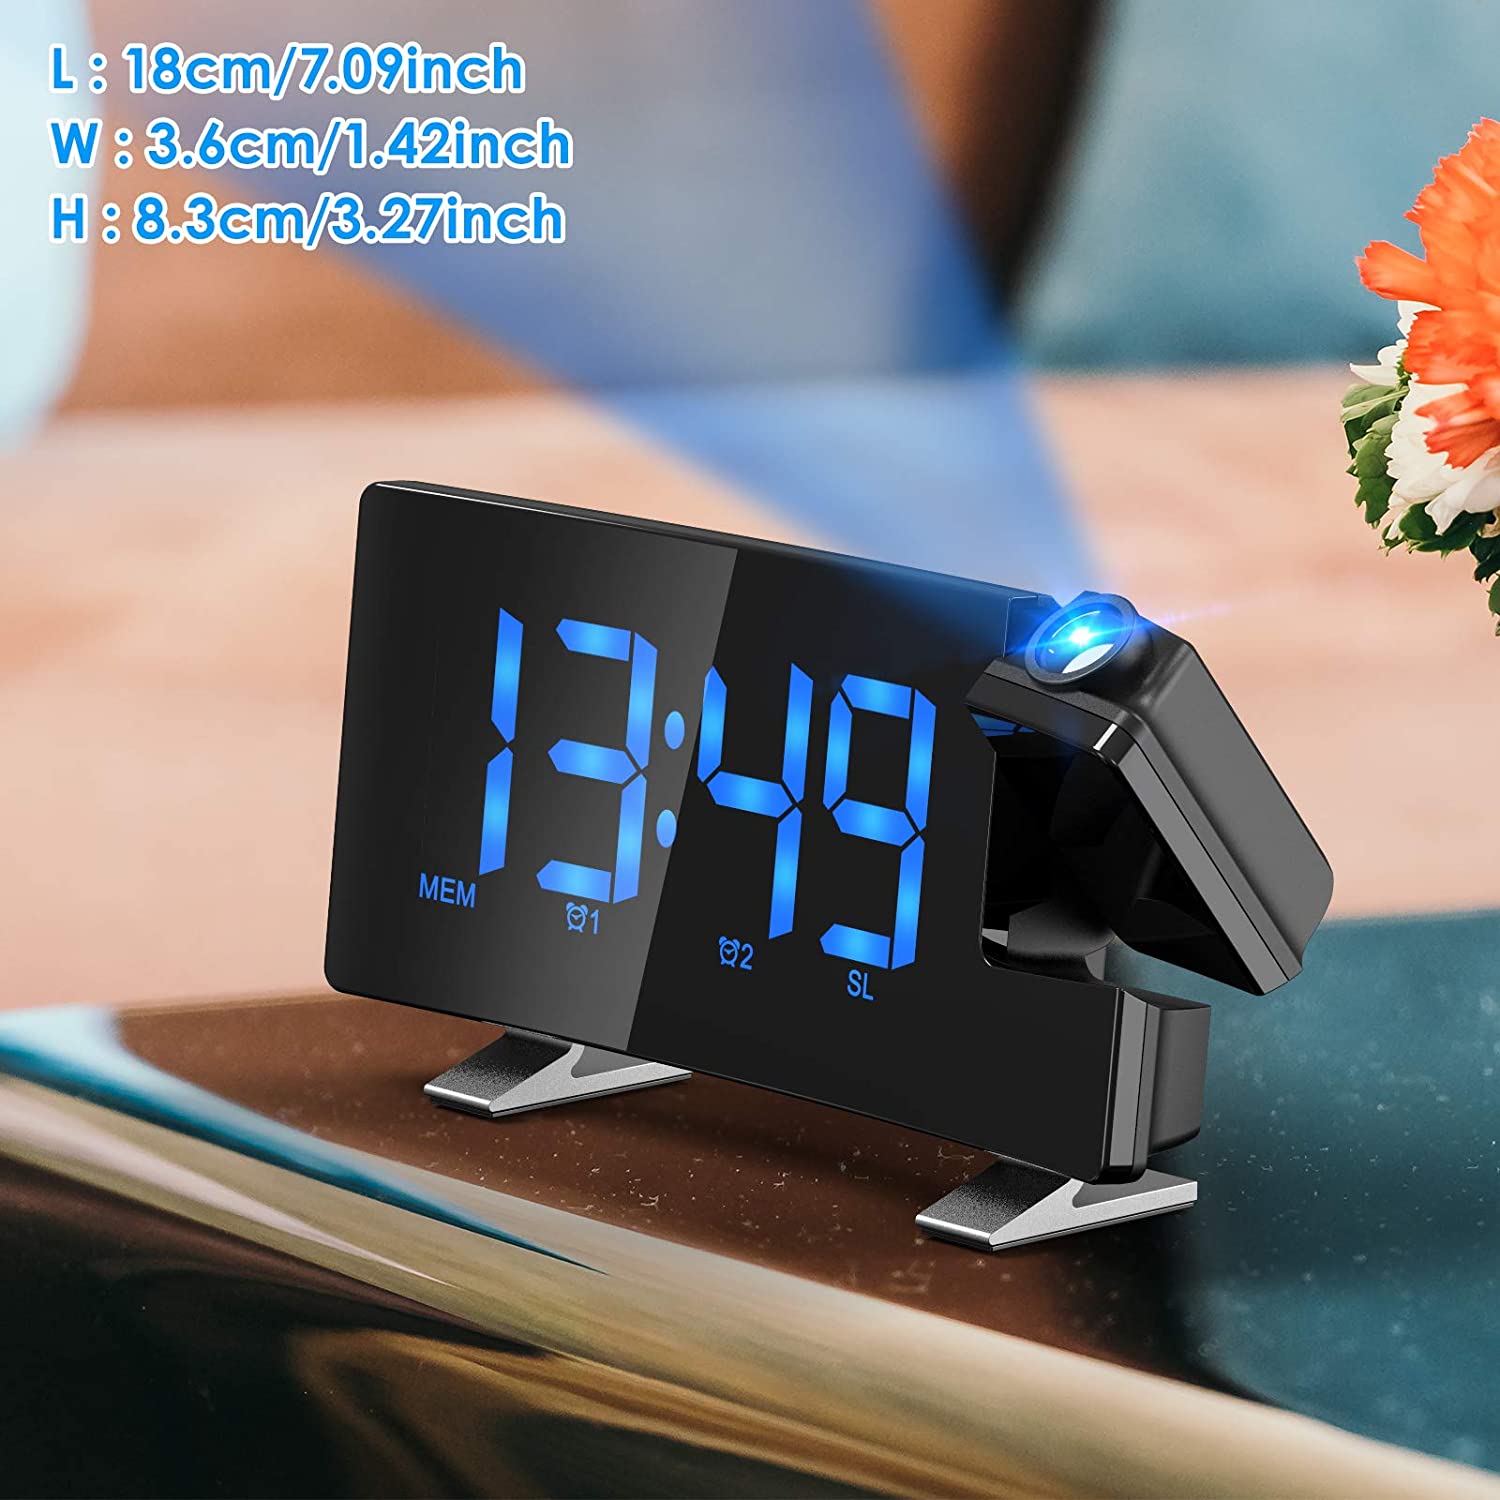 Los 9 mejores radio reloj despertador digital con proyector